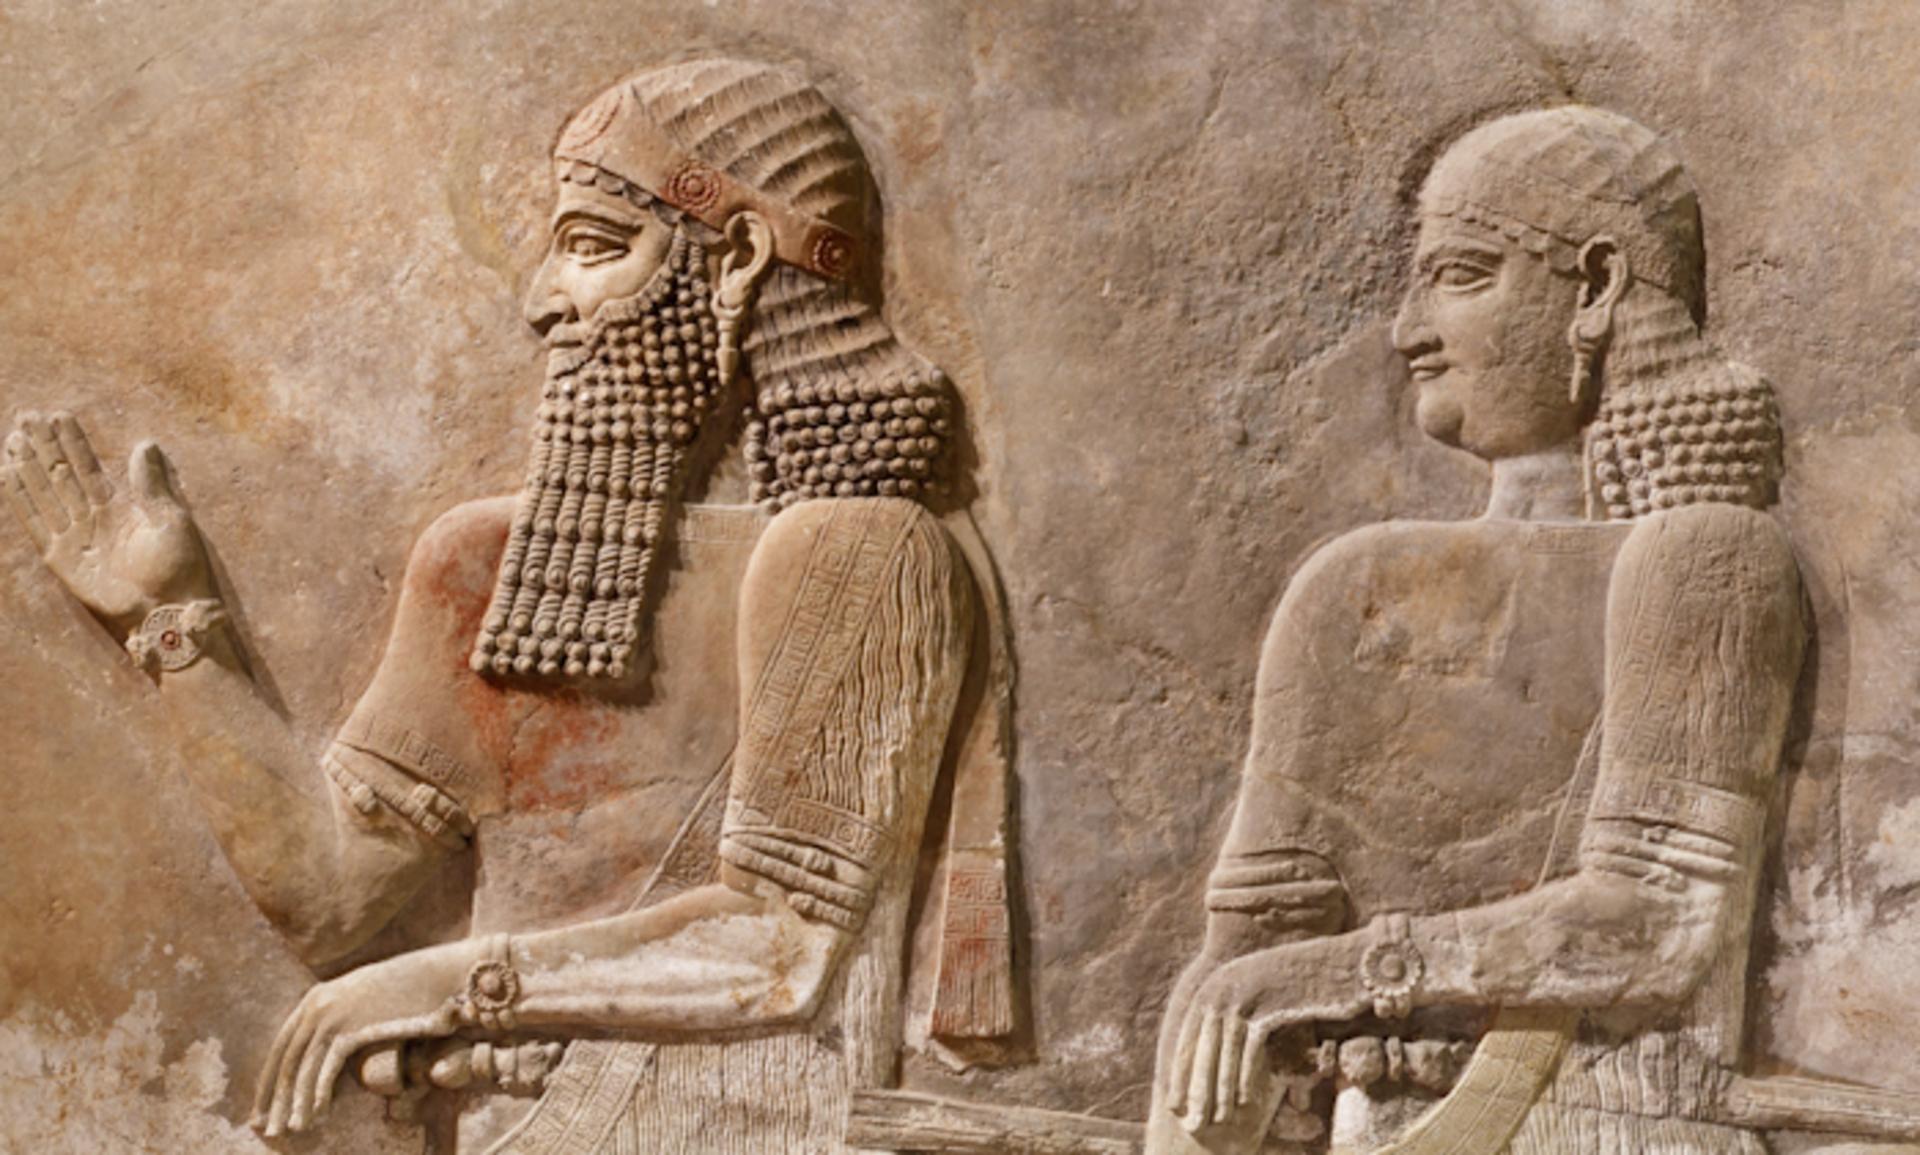 5. Assur Krallığı M.Ö. 2000-609